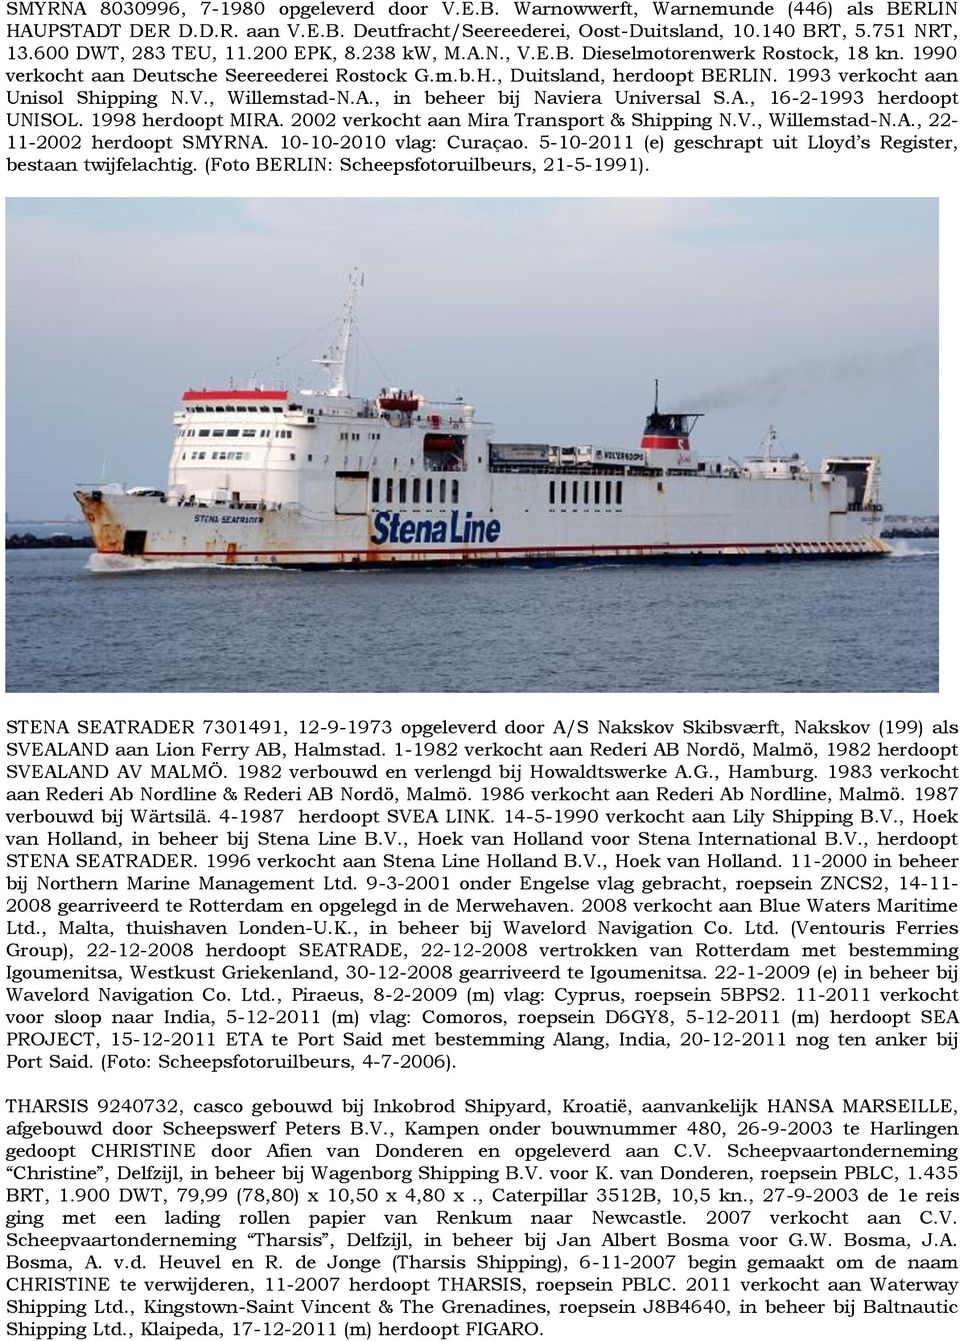 1993 verkocht aan Unisol Shipping N.V., Willemstad-N.A., in beheer bij Naviera Universal S.A., 16-2-1993 herdoopt UNISOL. 1998 herdoopt MIRA. 2002 verkocht aan Mira Transport & Shipping N.V., Willemstad-N.A., 22-11-2002 herdoopt SMYRNA.